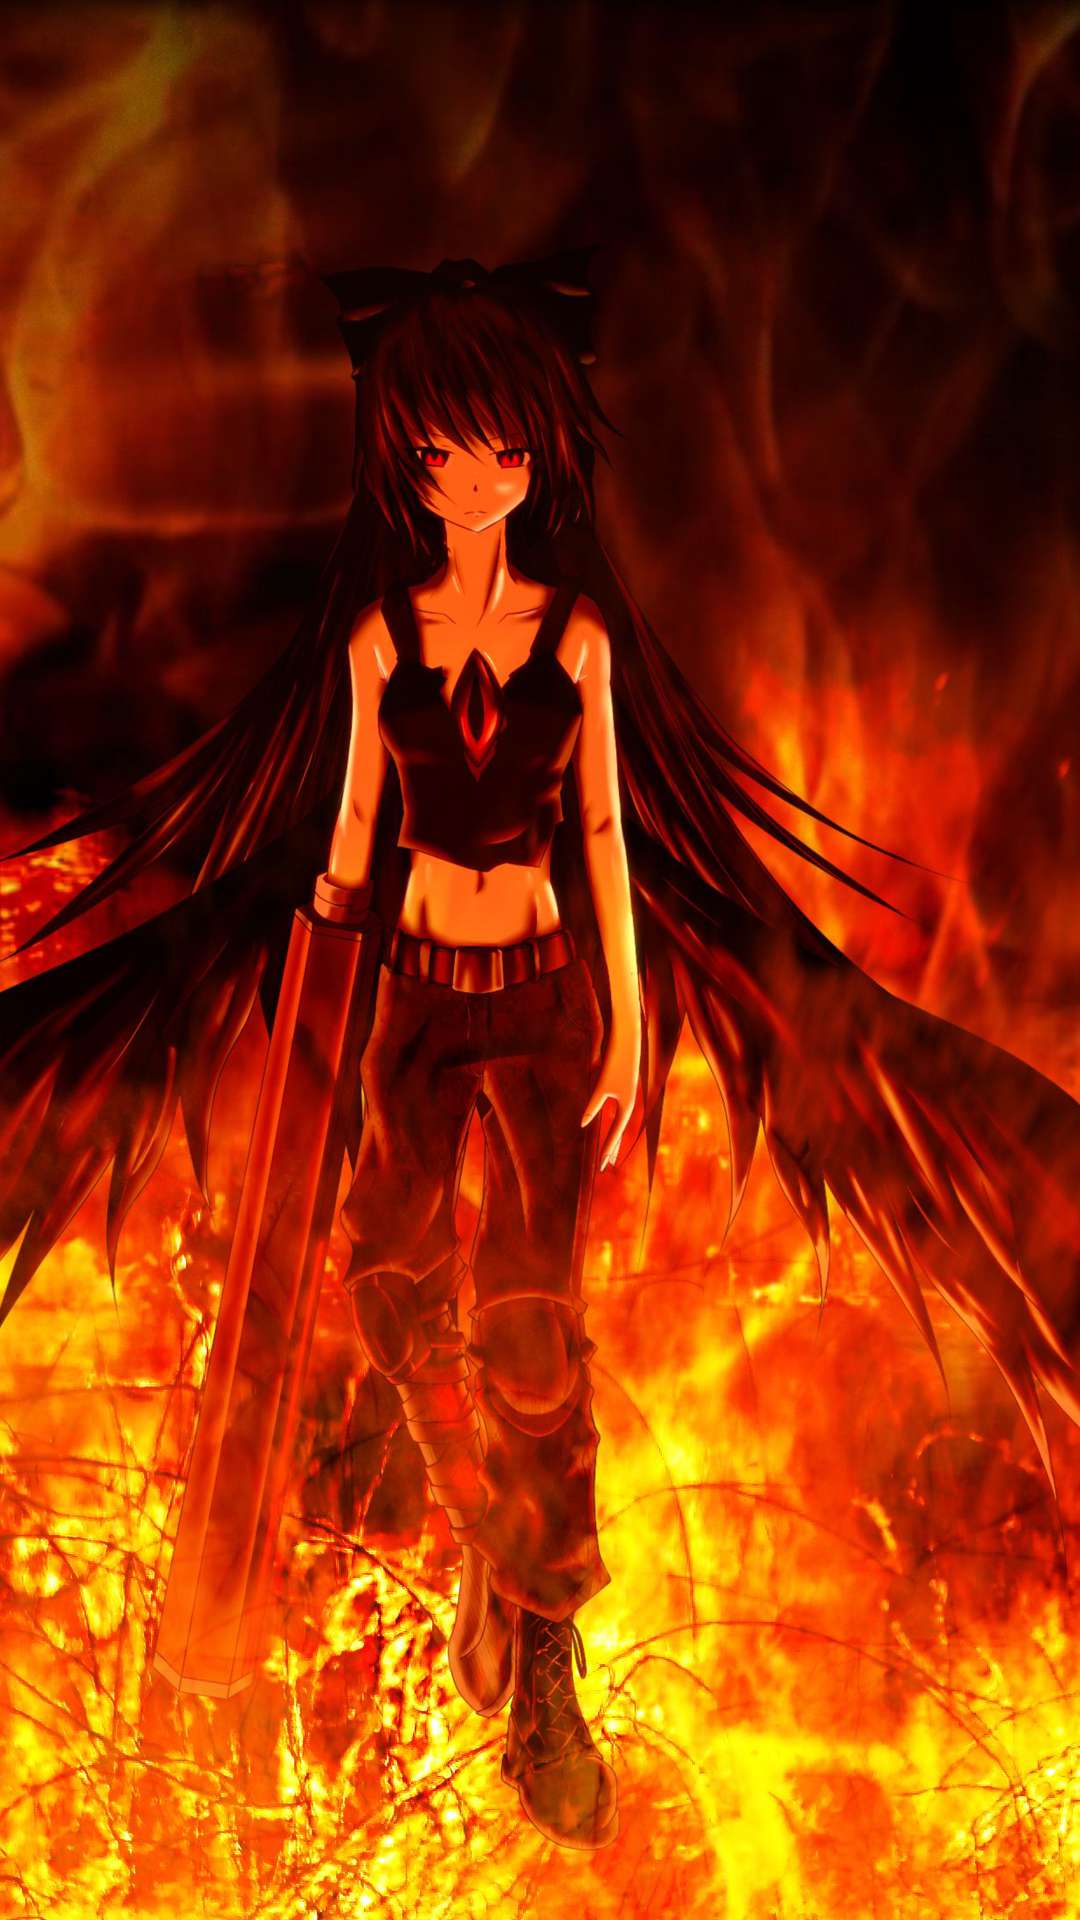 Wallpaper  anime fire Bleach Kurosaki Ichigo Hollow Vasto Lorde flame  screenshot computer wallpaper fictional character 1440x900  sevendark   224391  HD Wallpapers  WallHere